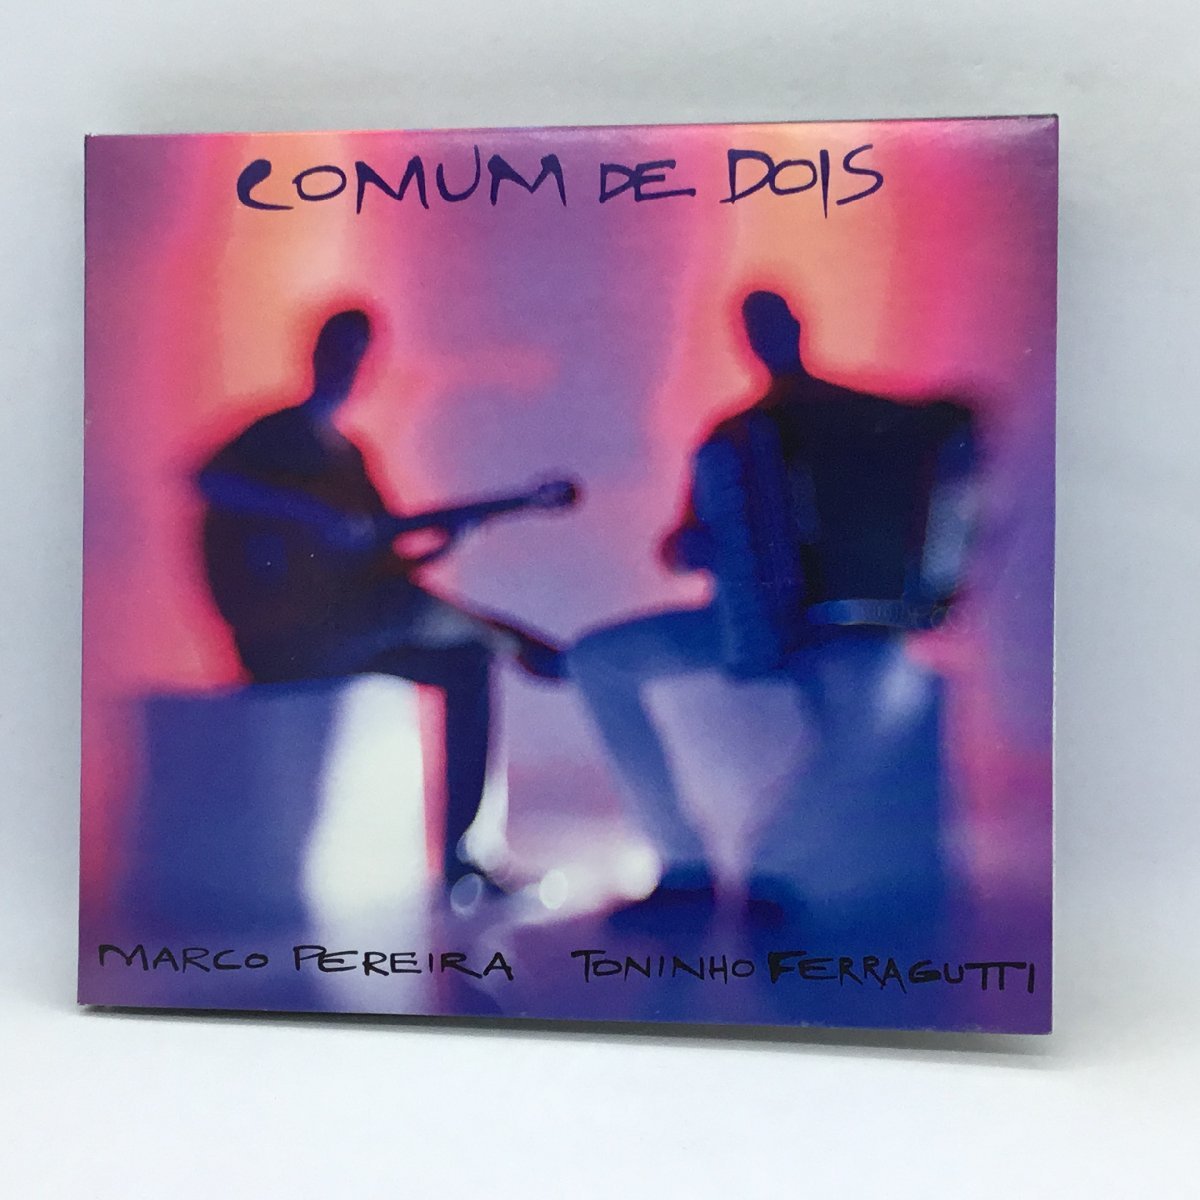 MARCO PEREIRA & TONINHO FERRAGUTTI / COMUM DE DOIS (CD) BA 0021 マルコ・ペレイラ&トニーニョ・フェハグッチ_画像2